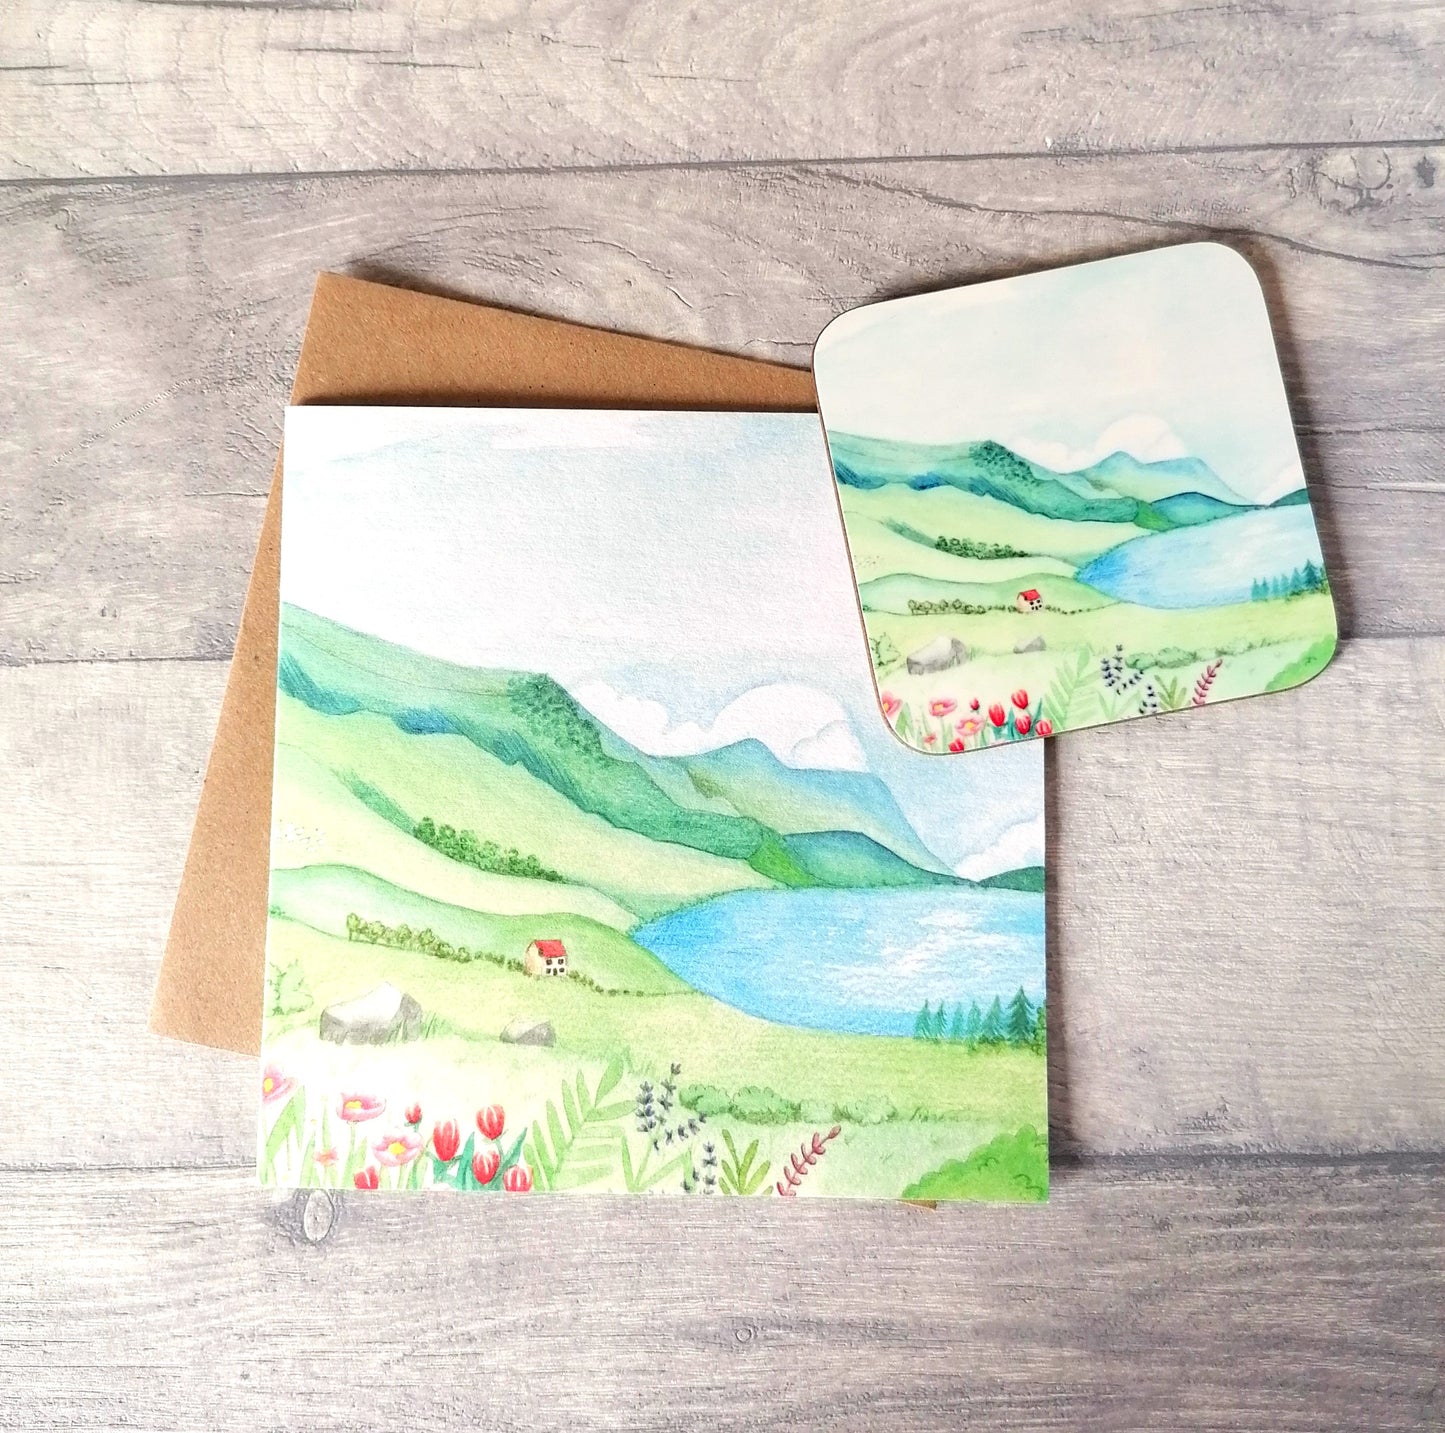 Snowdonia - Card and Coaster set